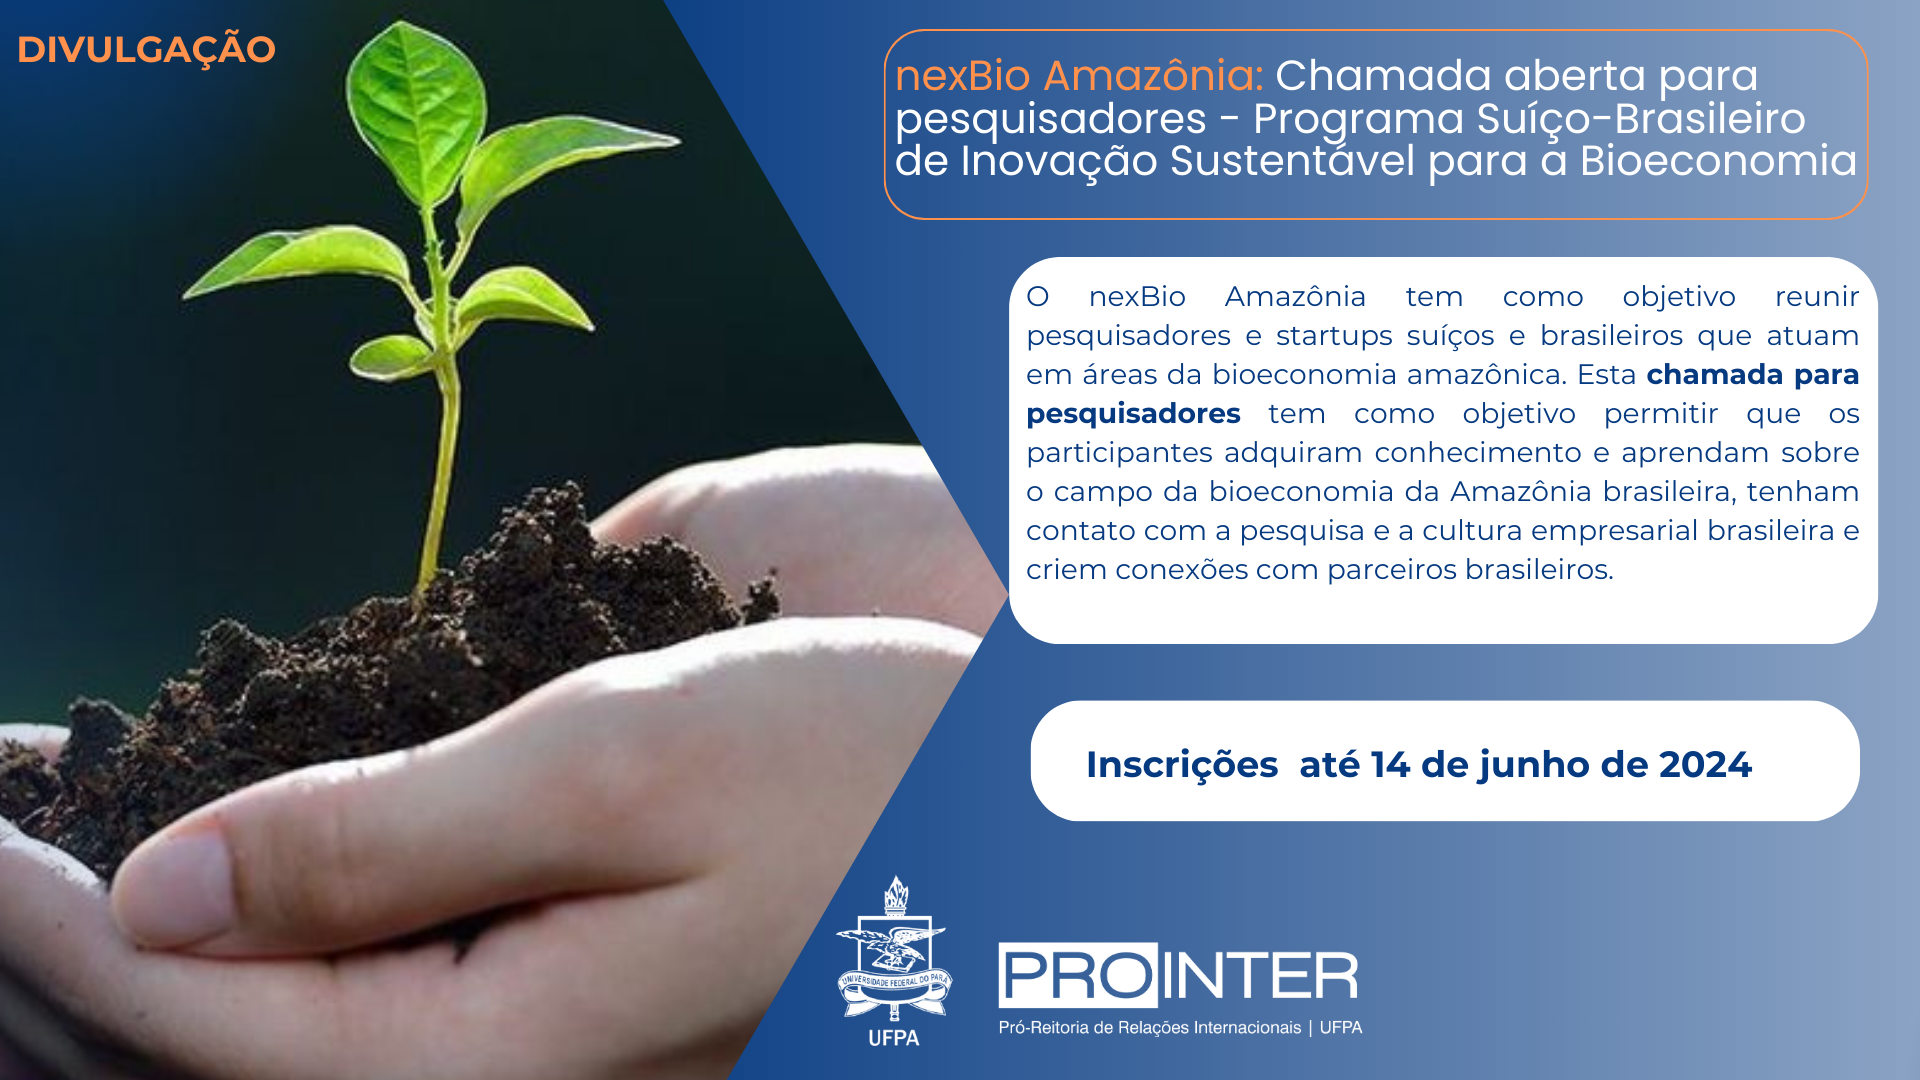 nexBio Amazônia: Chamada aberta para pesquisadores - Programa Suíço-Brasileiro de Inovação Sustentável para a Bioeconomia